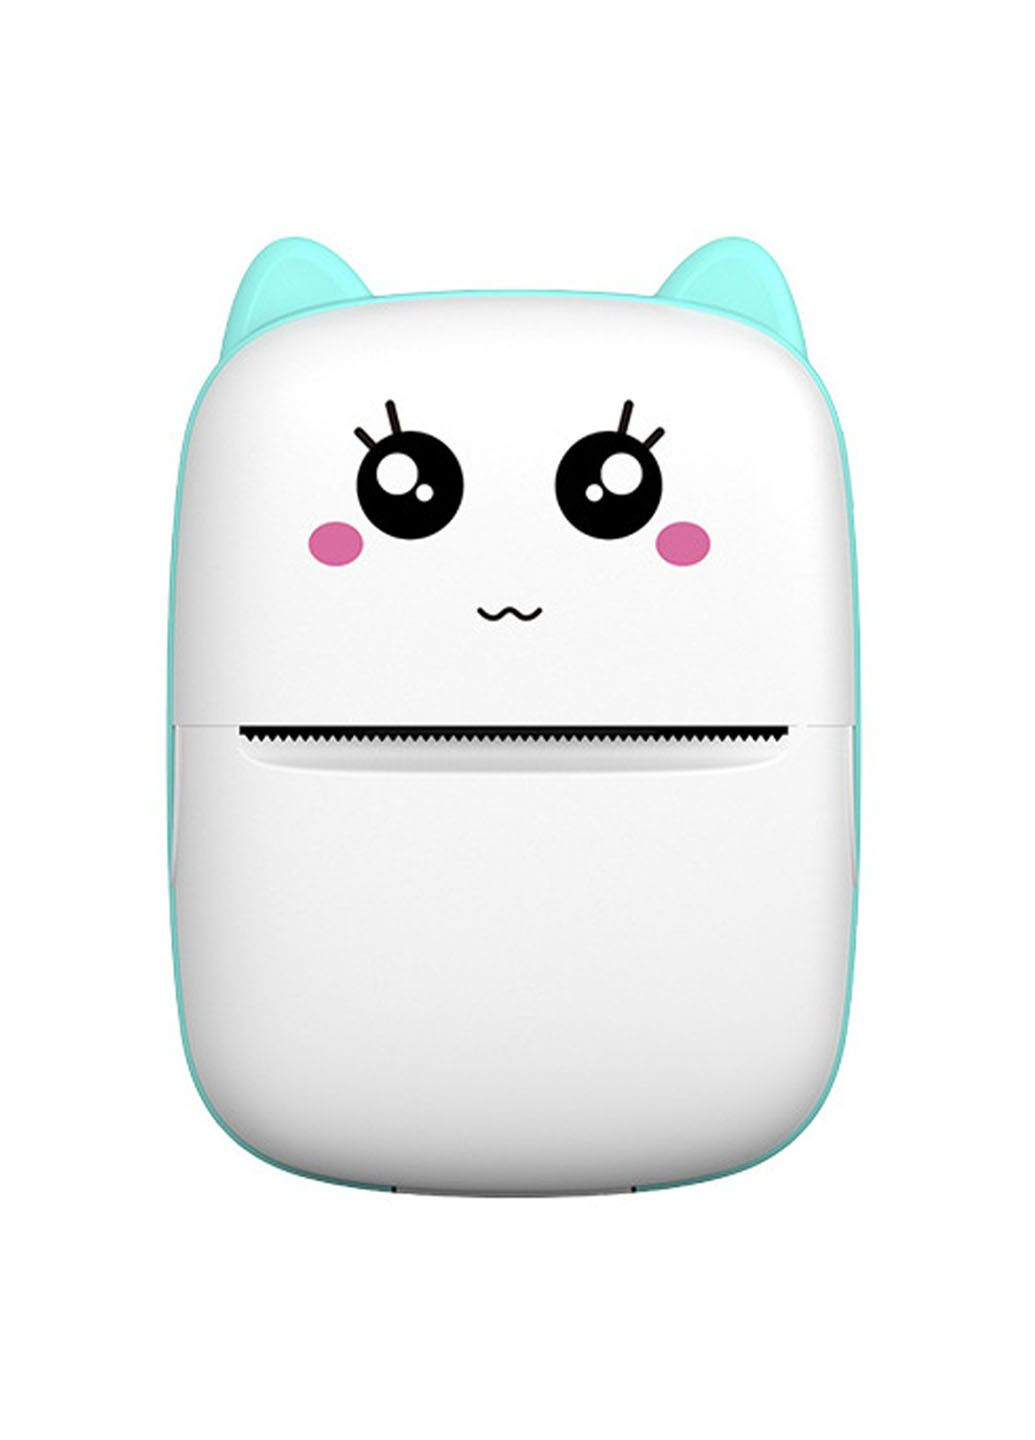 Портативный беспроводной мини-термопринтер BAMBI CAT MINI PRINTER совместим с Android/iOS Bluetooth 4.0 без заливки чернил Idea (292013880)